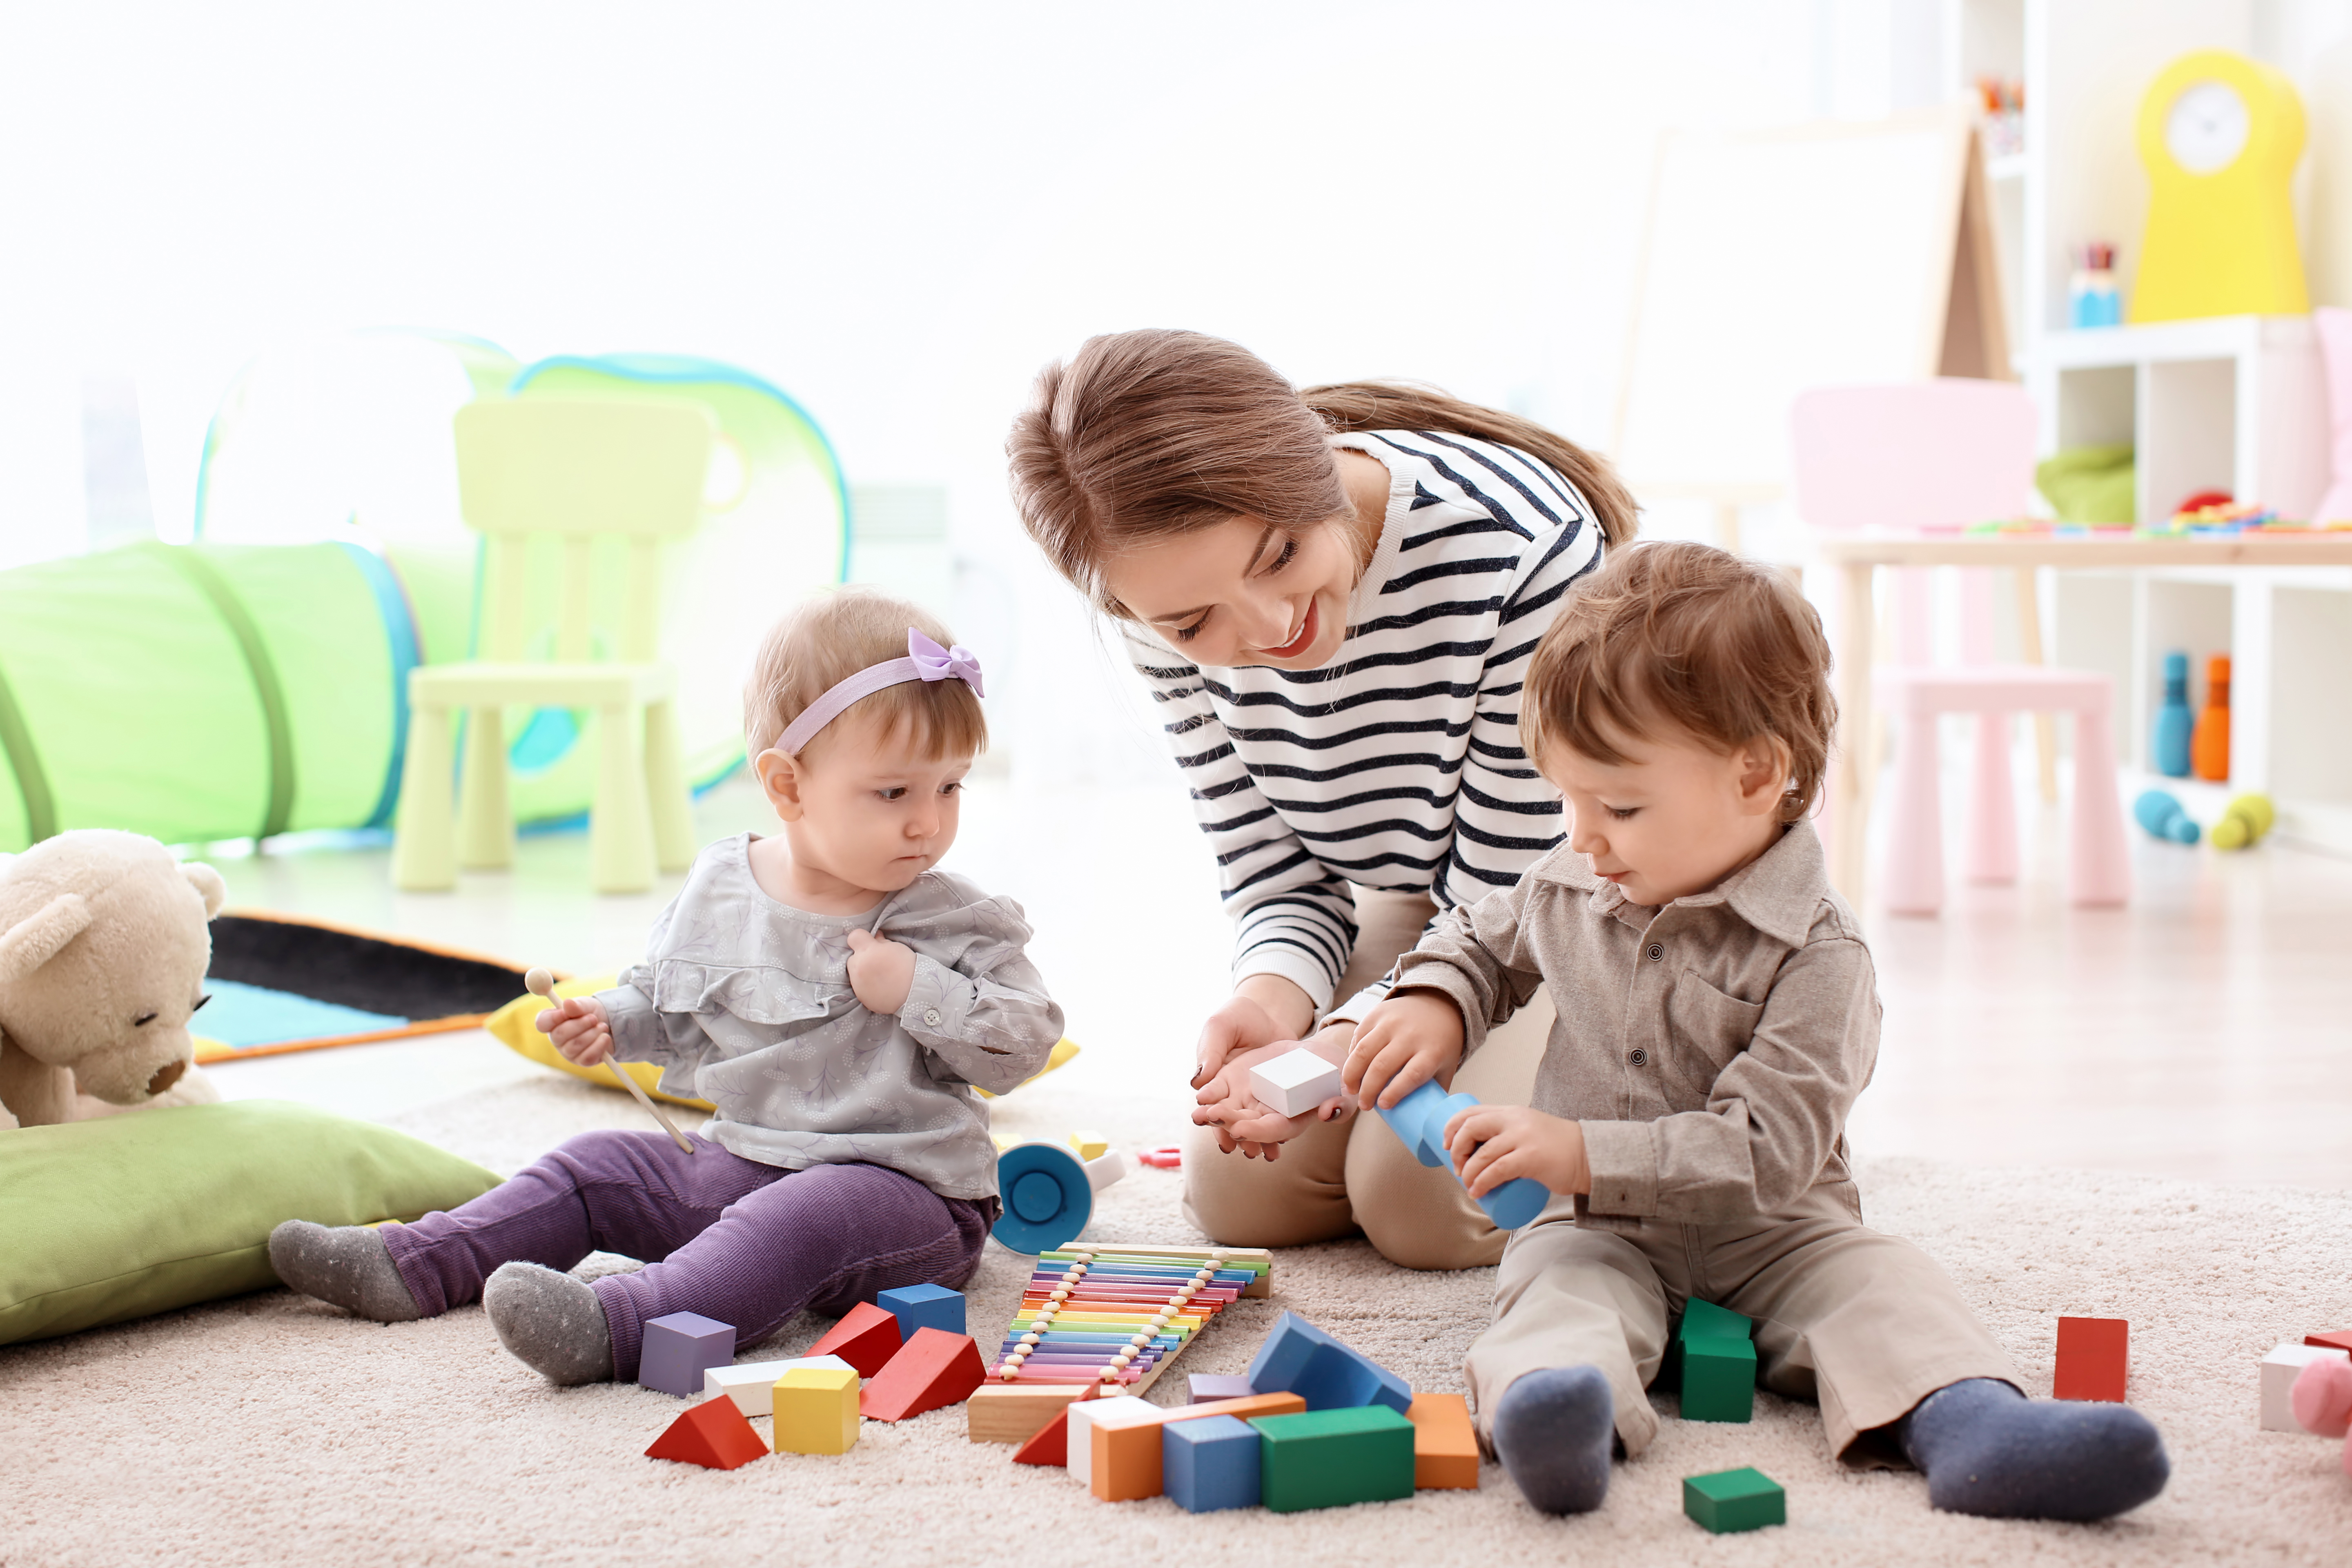 Eine junge Frau, die zwei Kleinkindern beim Spielen hilft | Quelle: Shutterstock